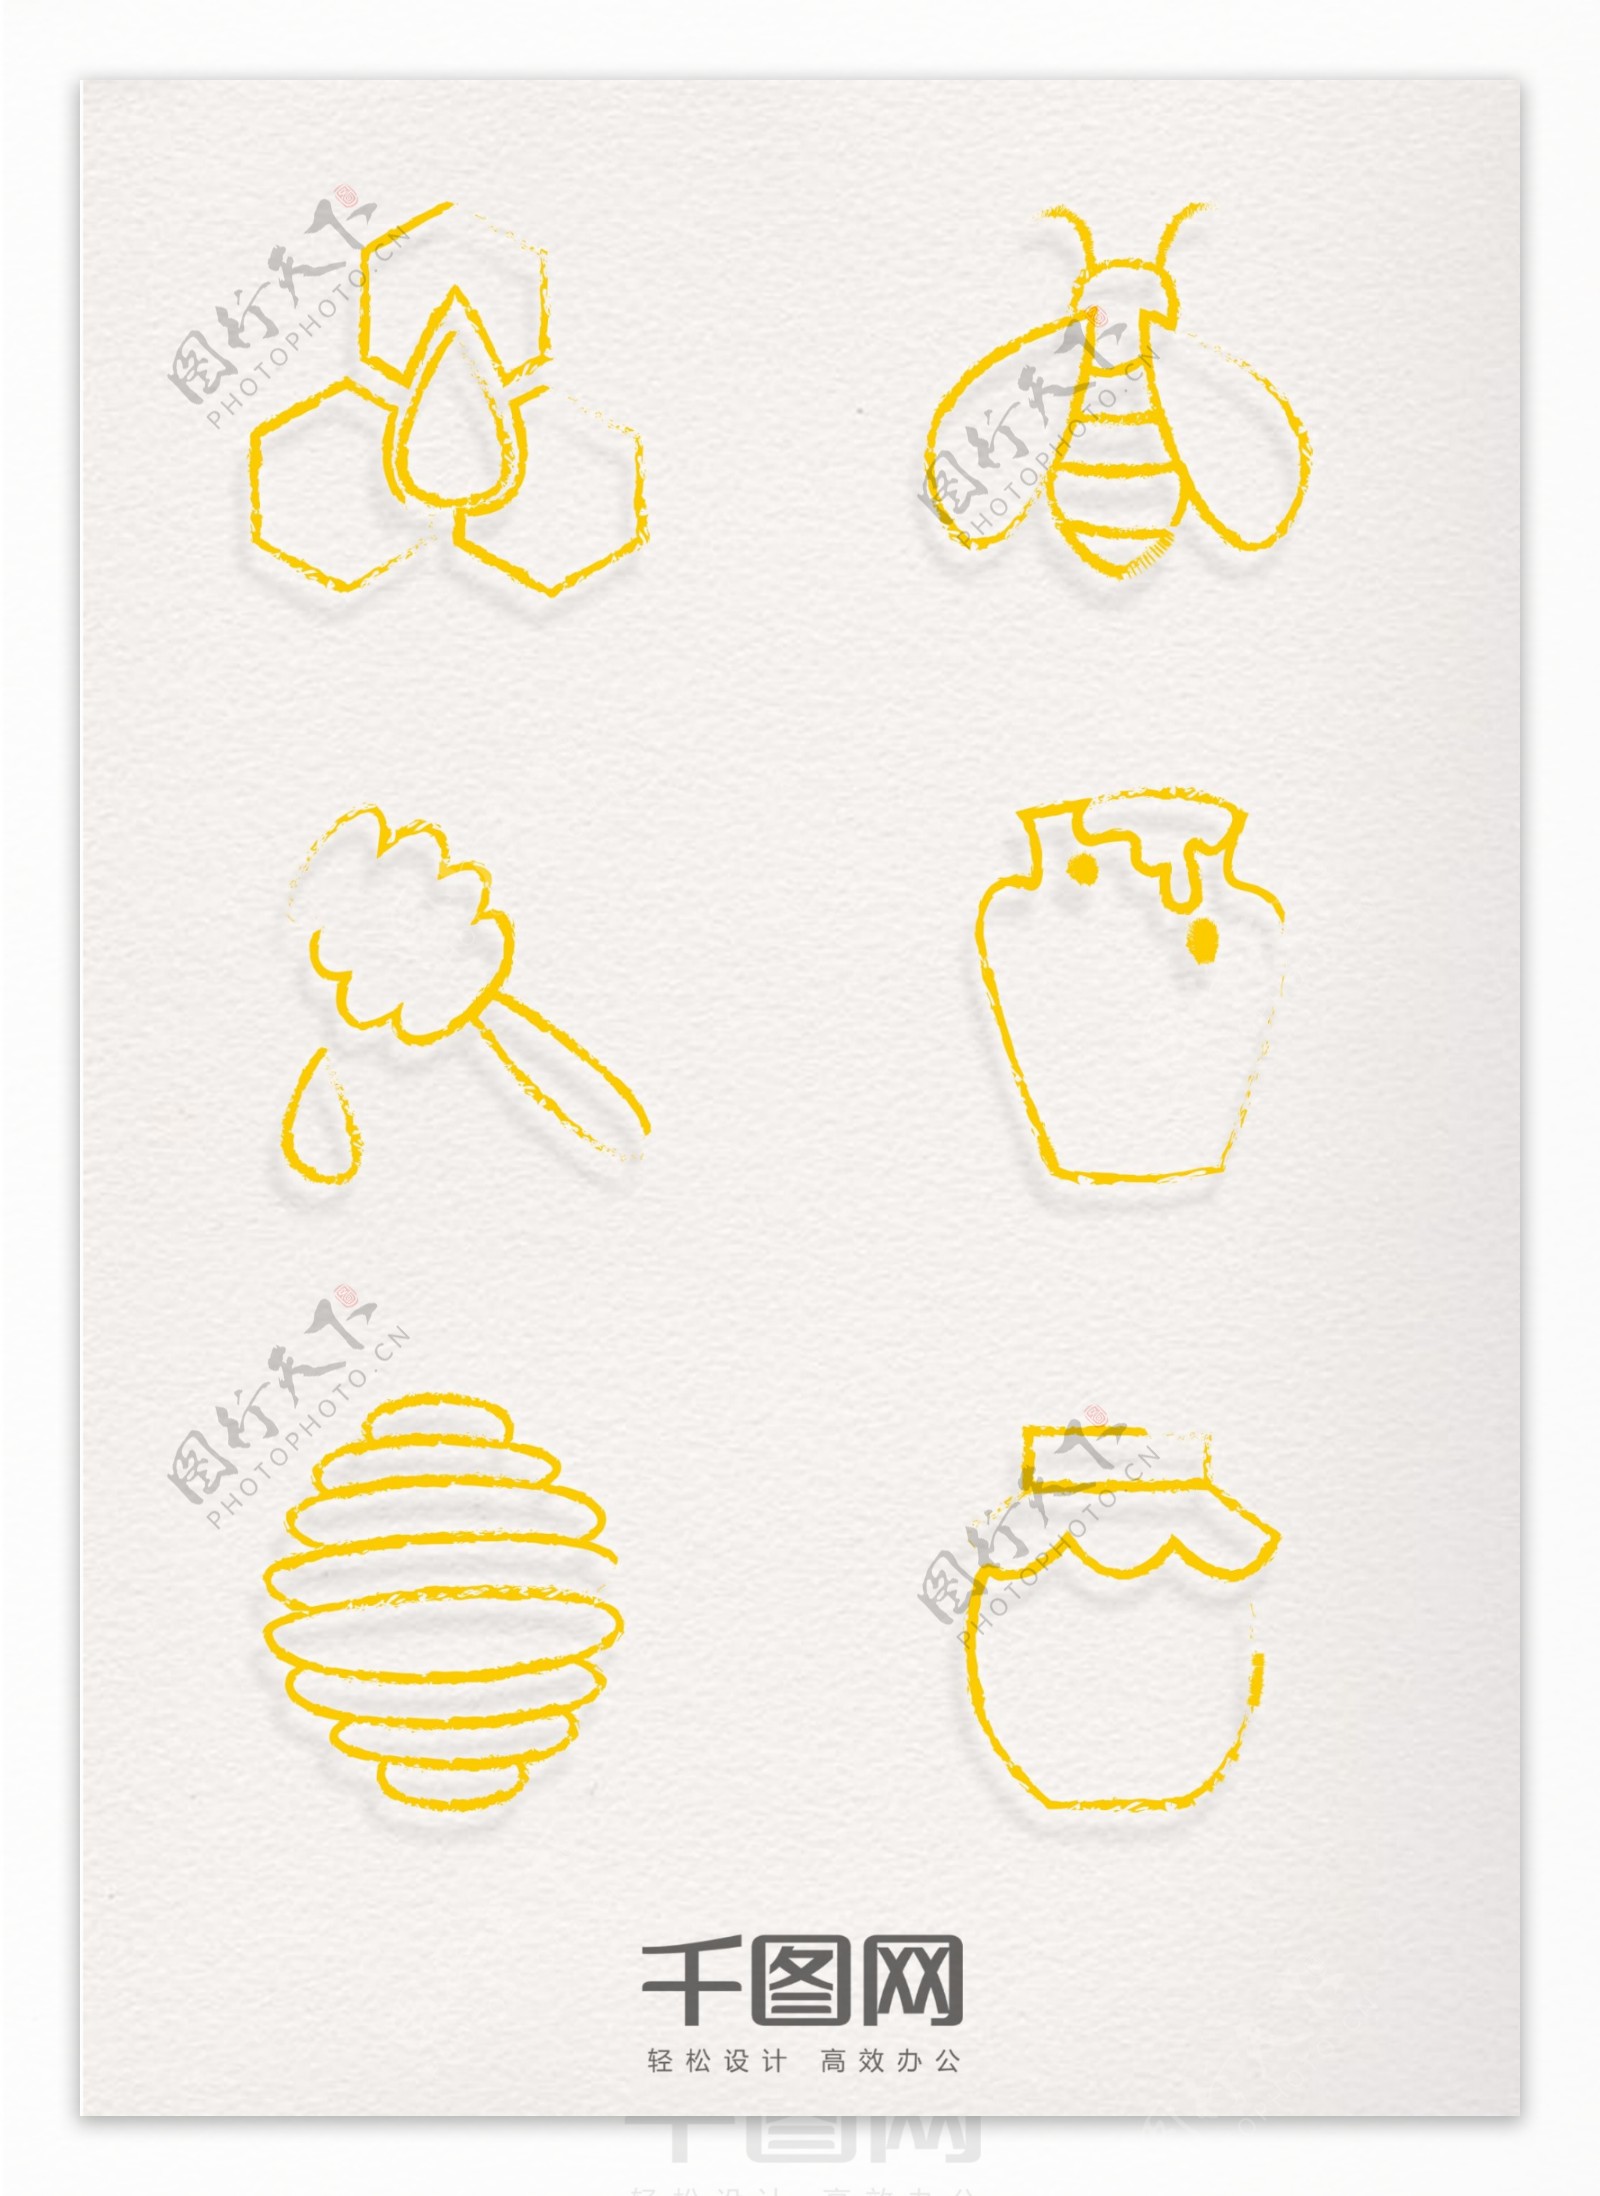 手绘风格蜜蜂元素金色印章